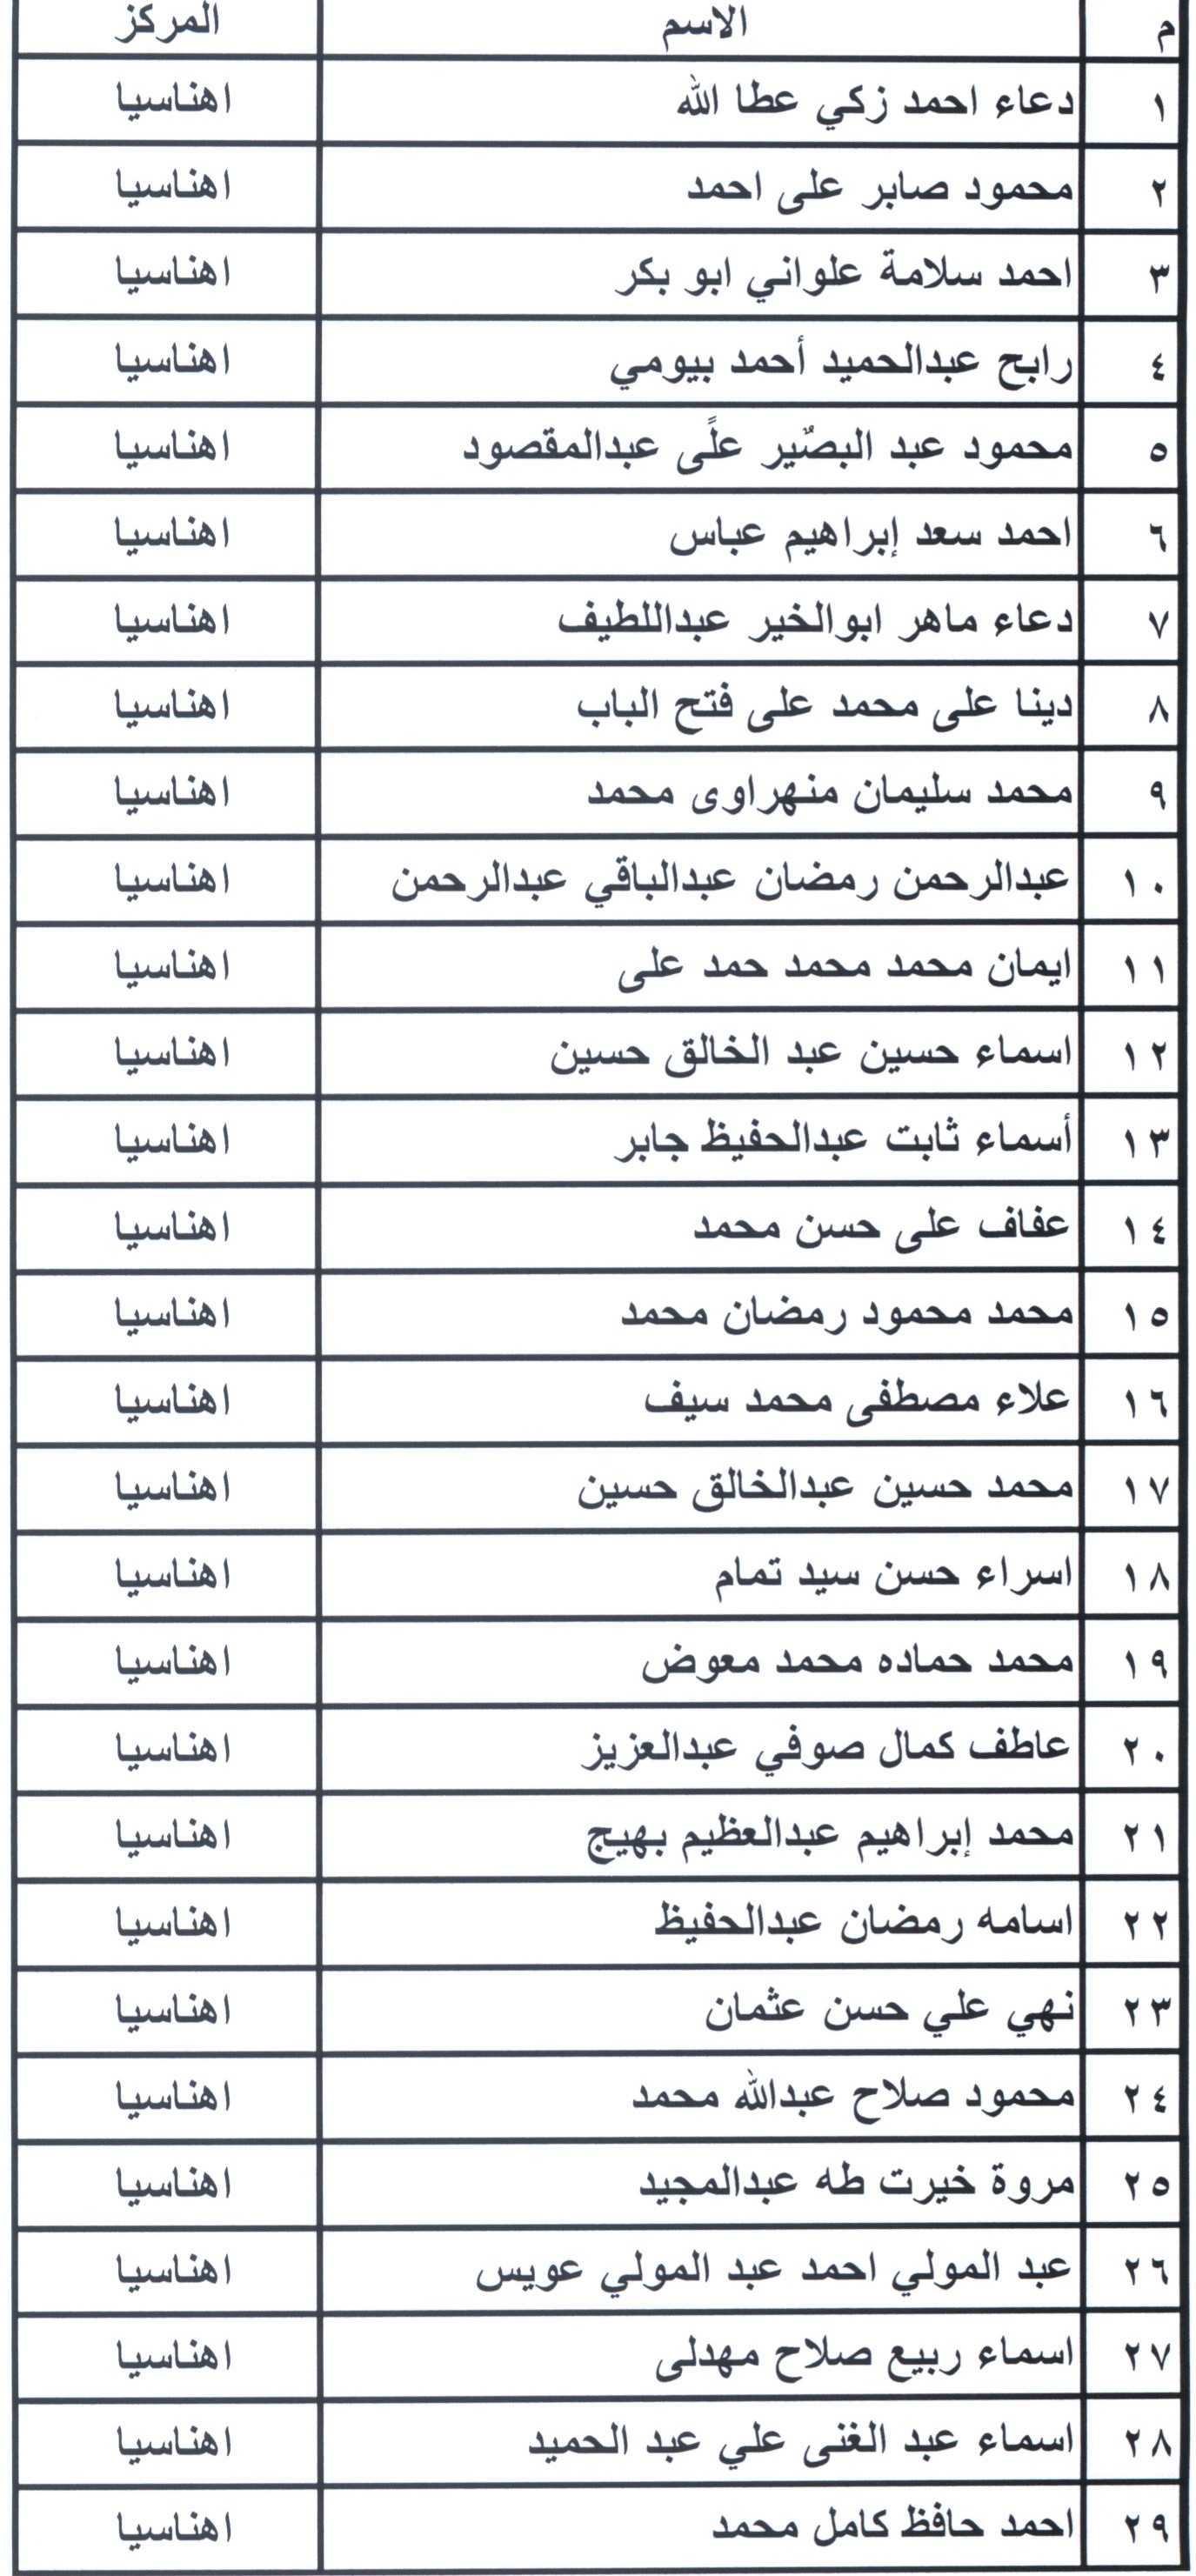 أسماء مرشحى شغل الوظائف ببمحافظة بنى سويف (10)